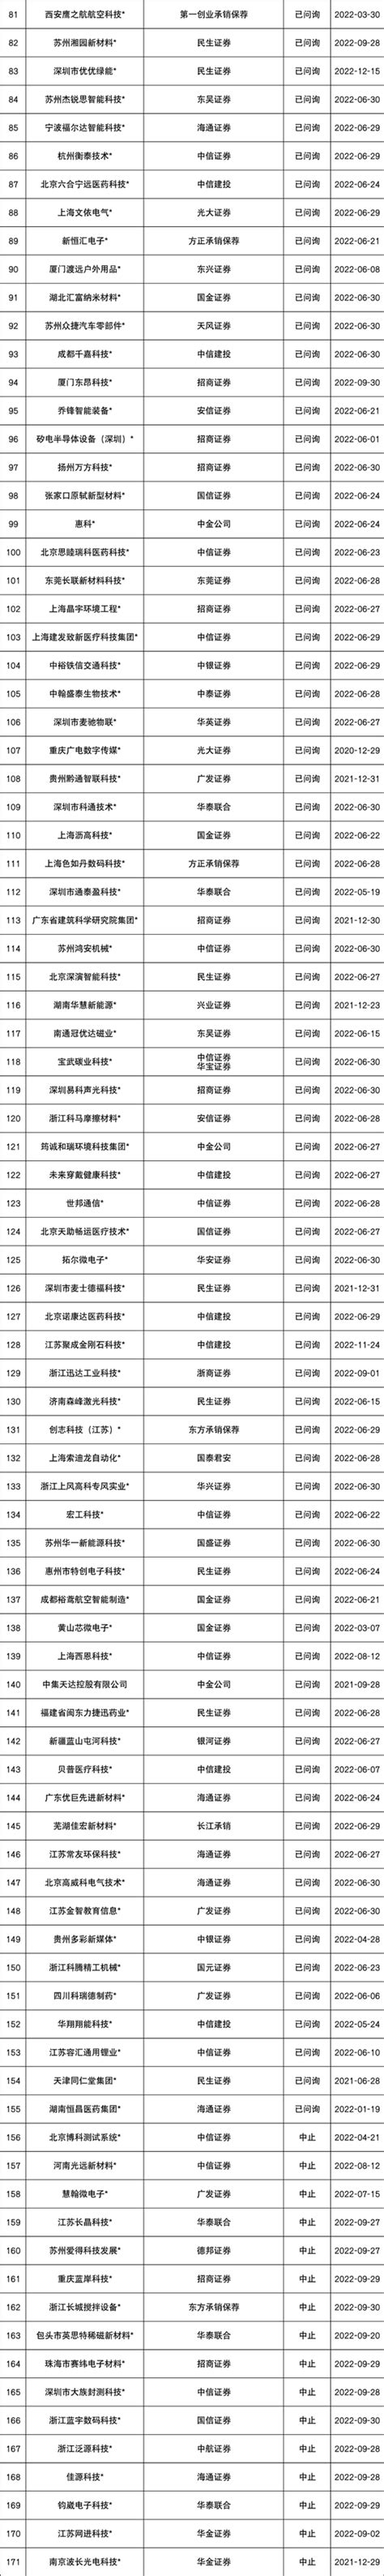 2020，陕西7家企业排队IPO（附最新IPO排队名单） - 知乎